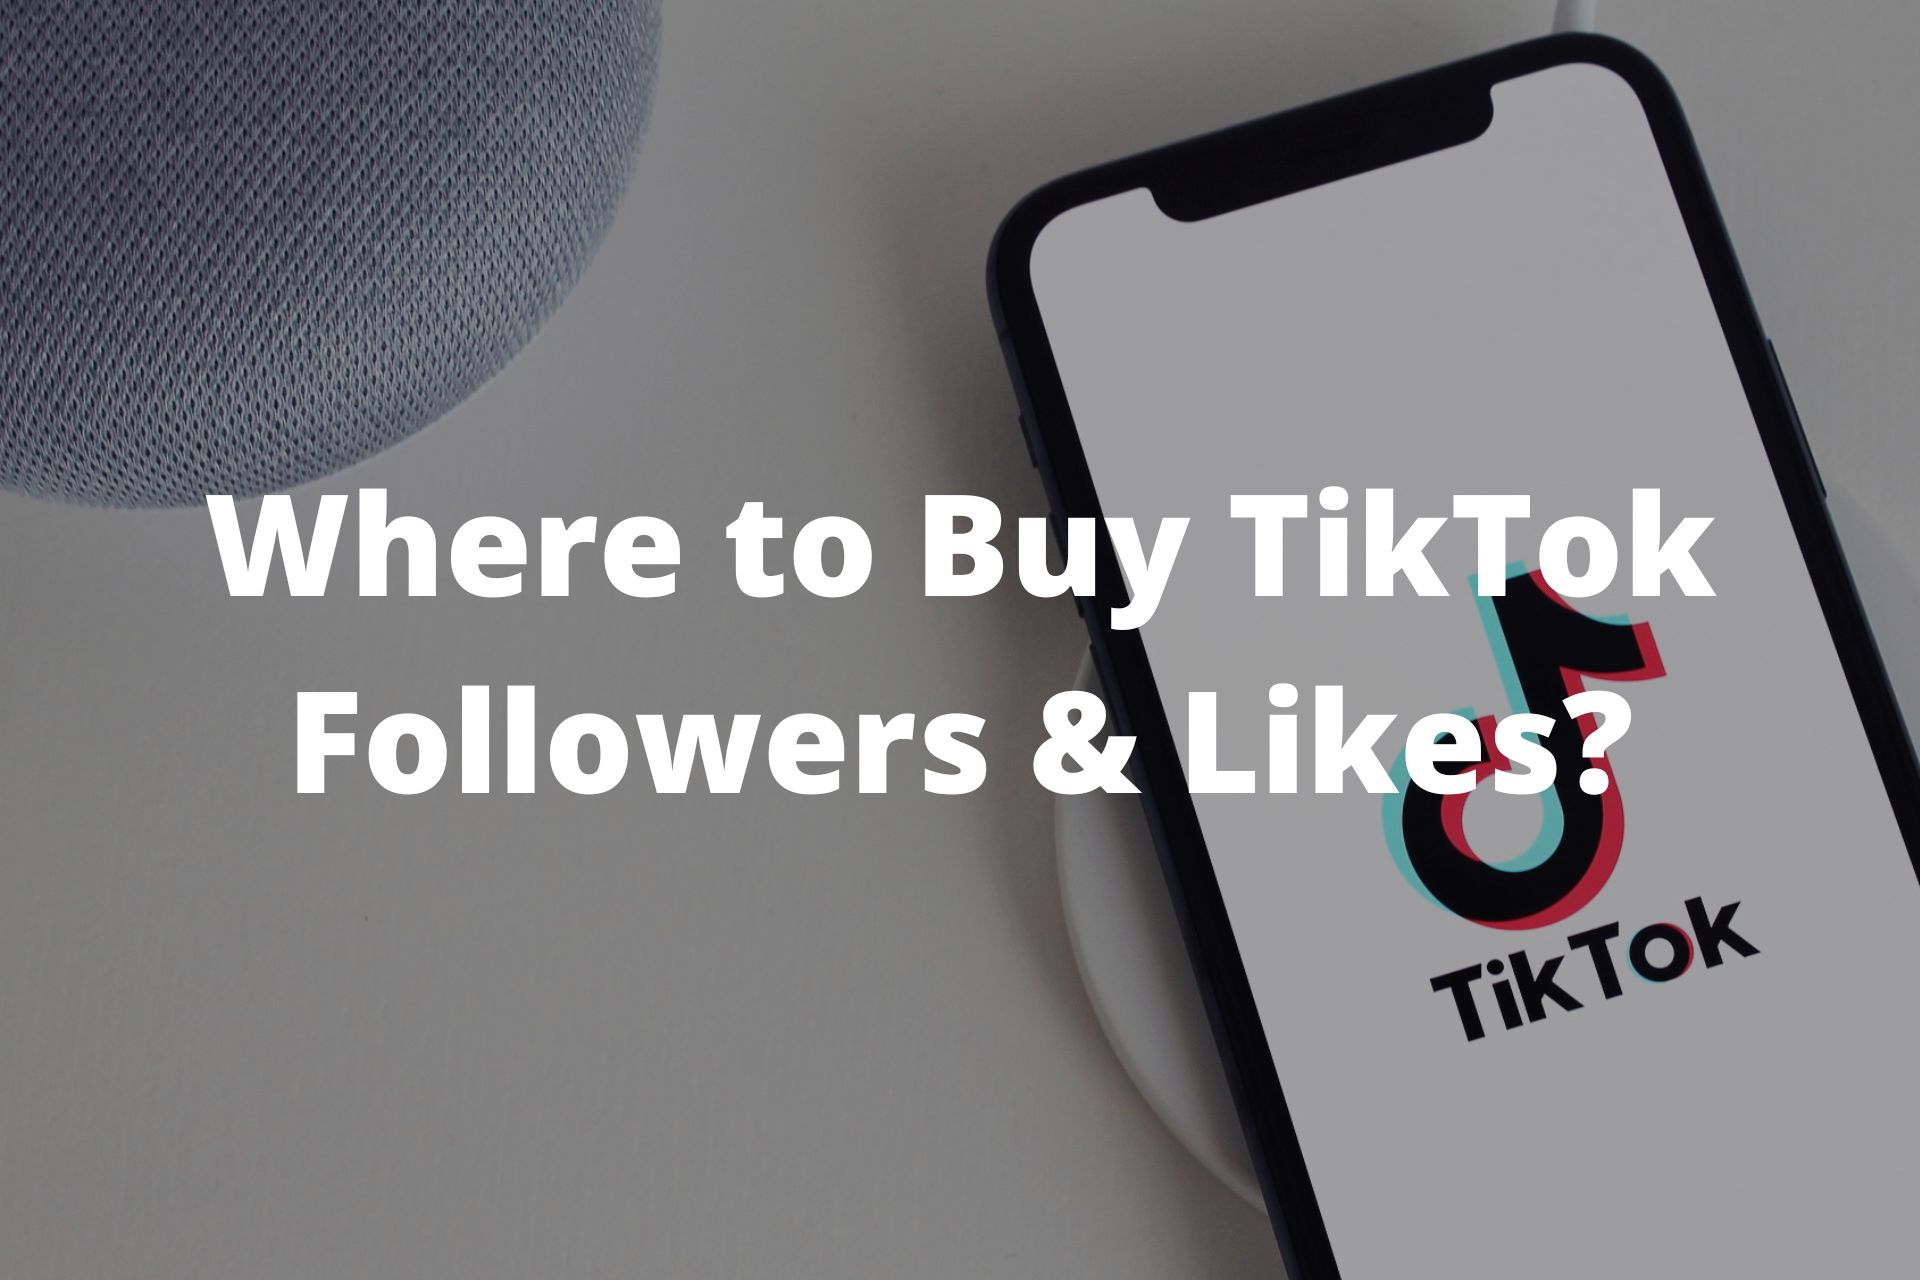 Where to Buy TikTok Followers & Likes